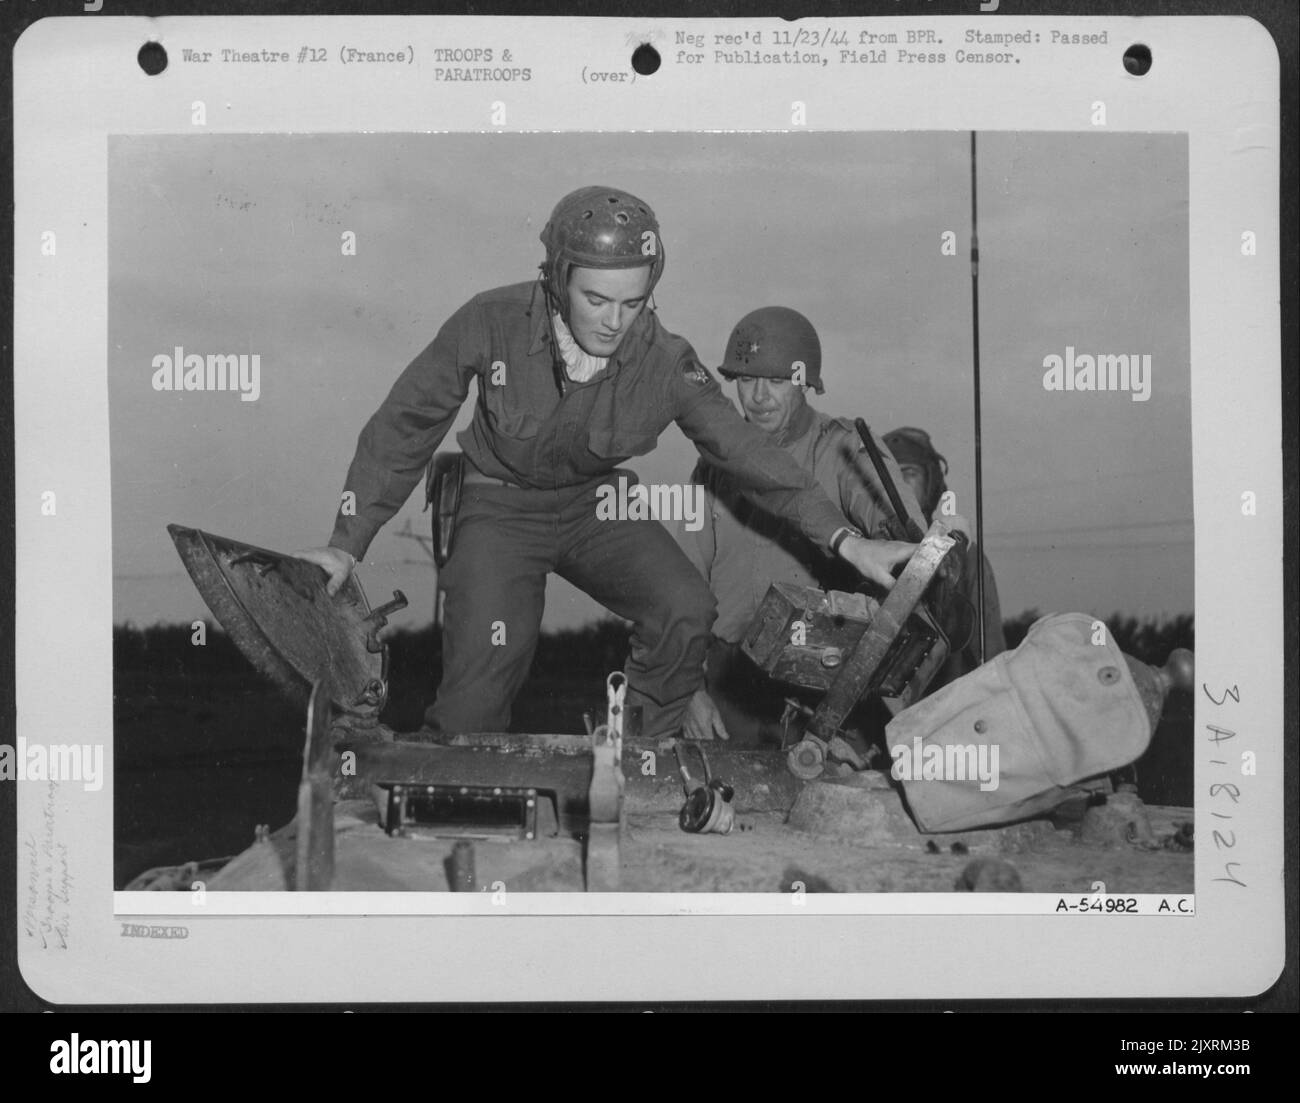 Frankreich-auf dem obigen Foto tritt LT. Charles R. Earls in einen Panzer ein, der derzeit einen Zottel in Nazi-Gebiet machen wird. Hinter dem P-47 Thunderbolt Pilot steht Brig. General Truman E. Boudinot aus Beverly Hills, Kalifornien, Kommandant eines Yank-Panzers Stockfoto